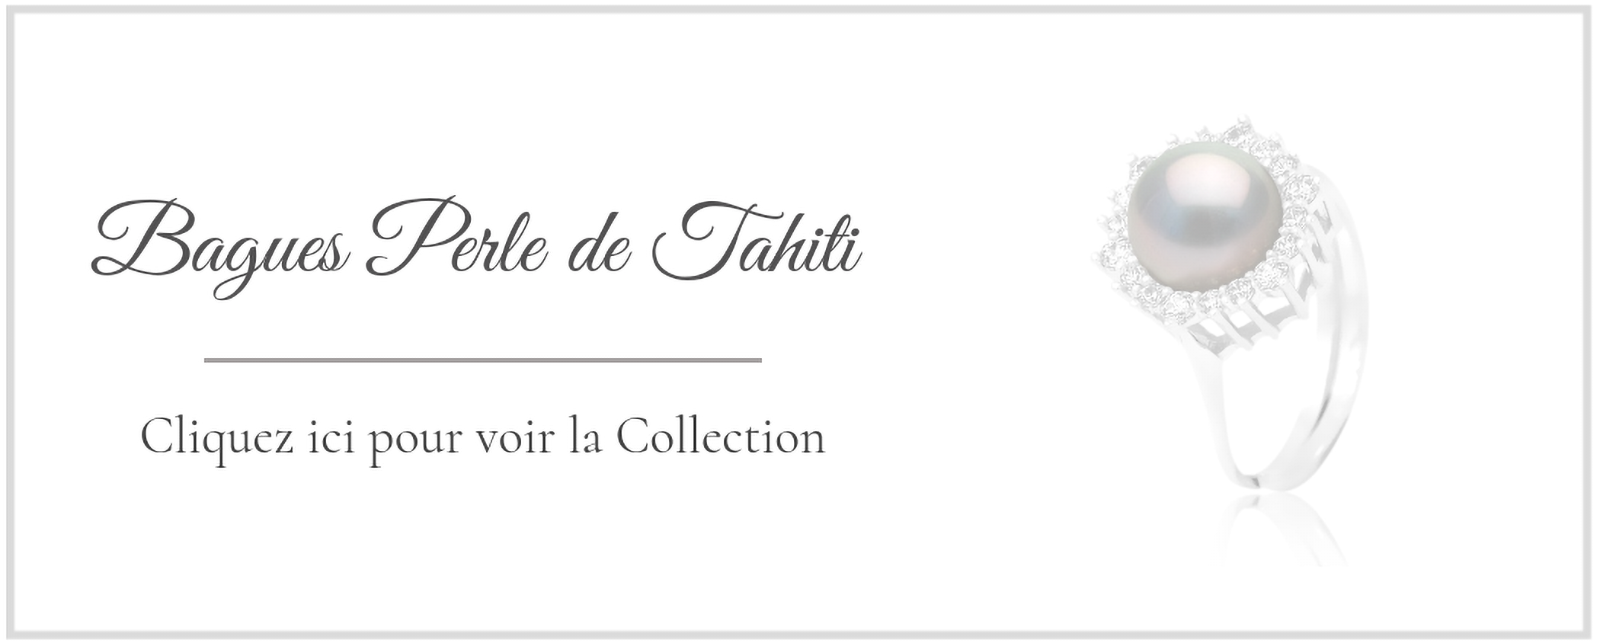 Collection Bagues Perle de Tahiti